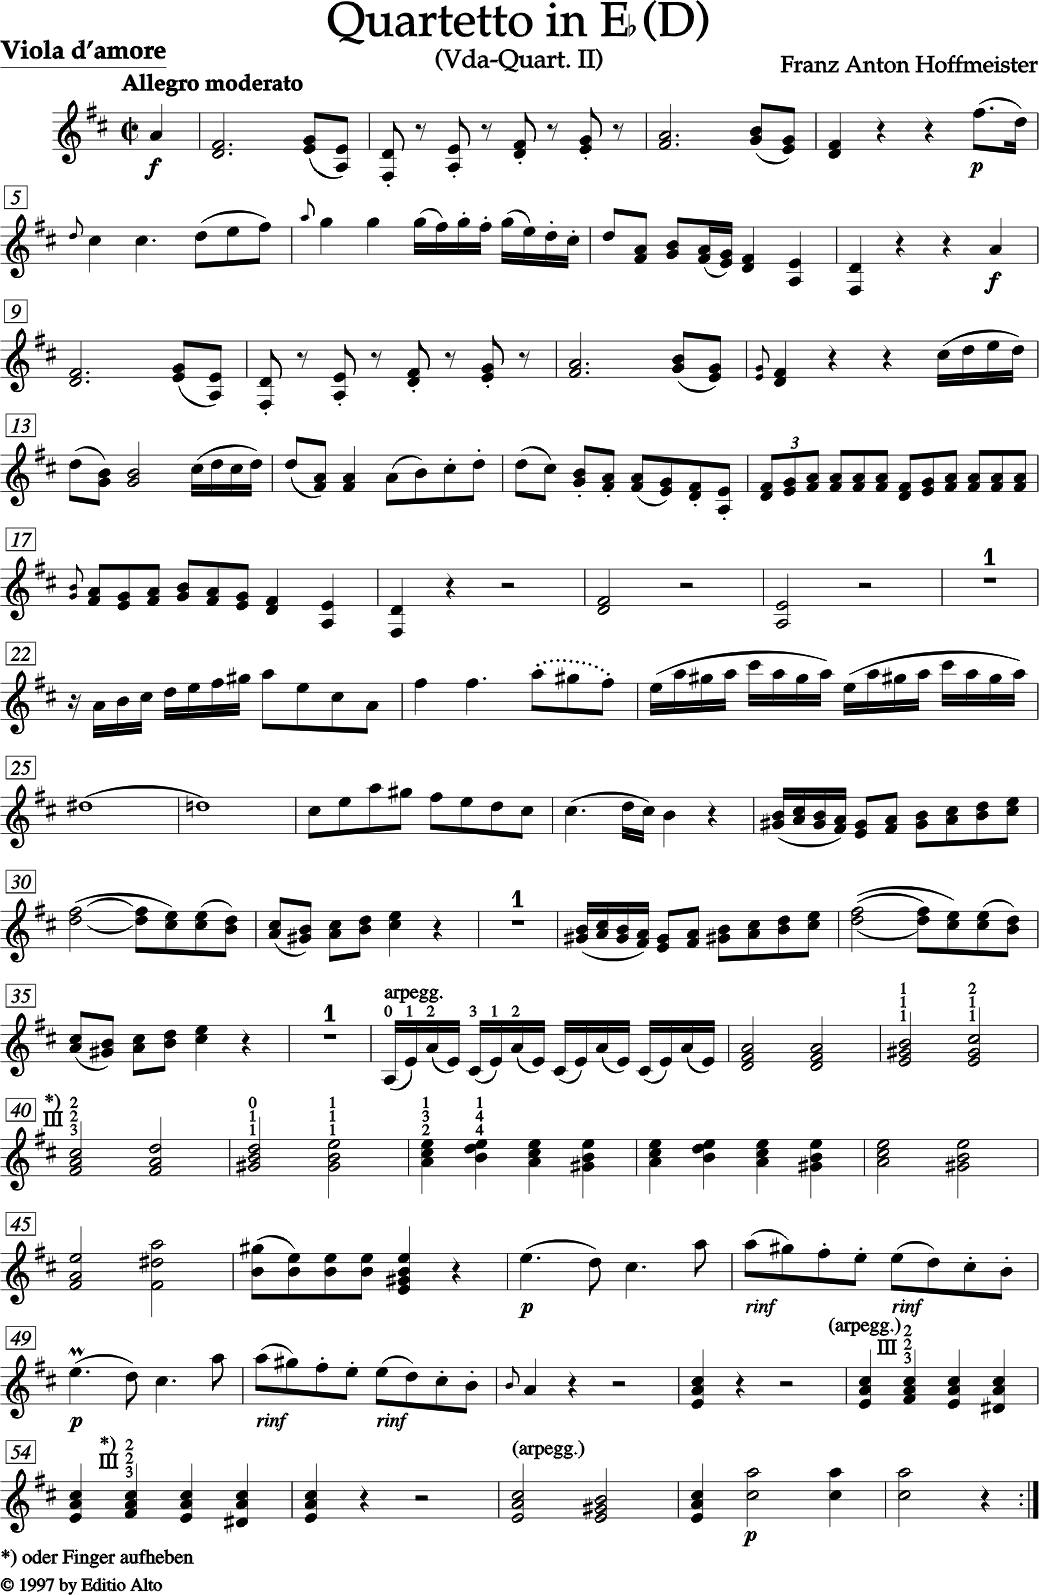 FRANZ ANTON HOFFMEISTER QUARTETT II Es Dur (D) für Viola d'amore, zwei Violinen, Violoncello und zwei Hörner ad libitum